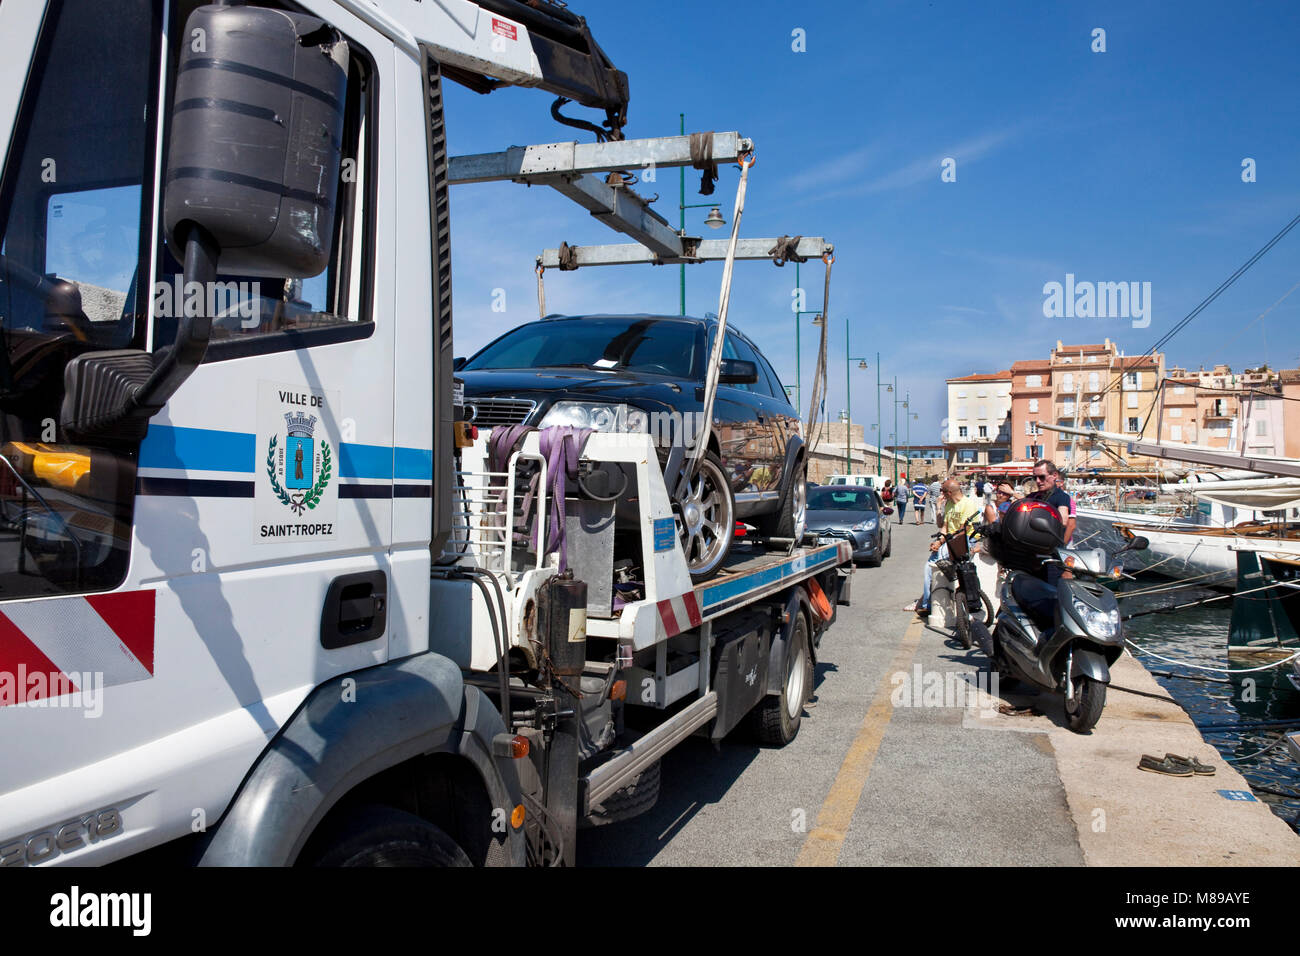 Les câbles d'une infraction de stationnement dans le port de Saint-Tropez, Côte d'Azur, France Sud, Côte d'Azur, France, Europe Banque D'Images